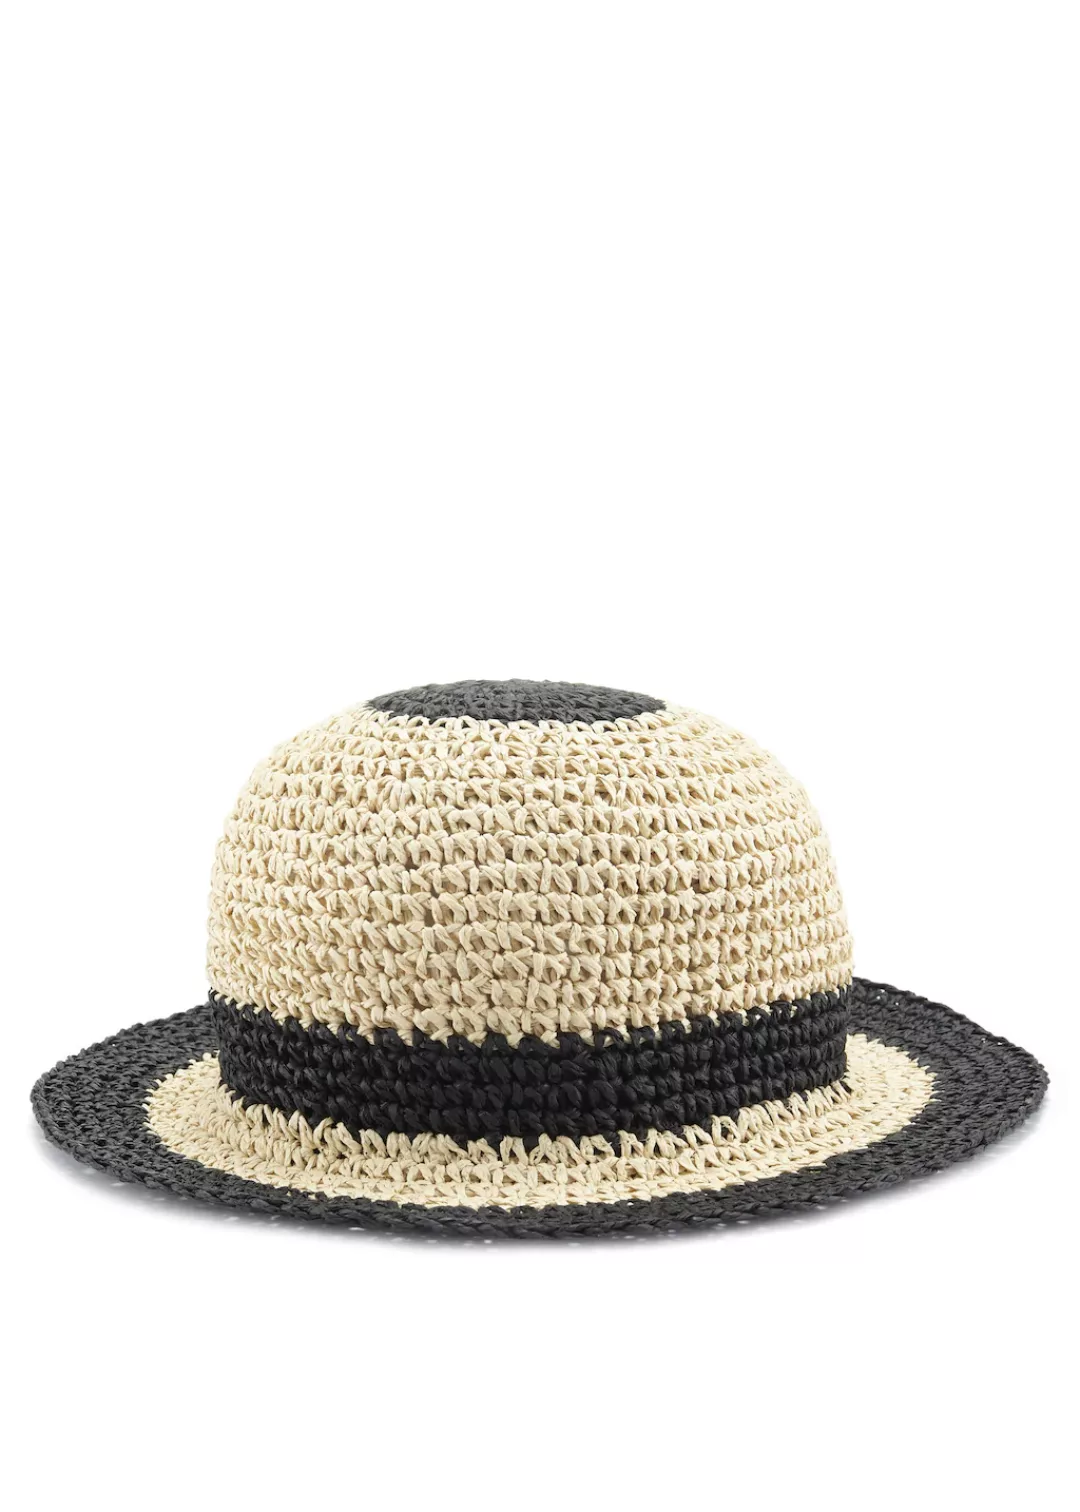 LASCANA Strohhut, Bucket Hat aus Stroh, Sommerhut, Kopfbedeckung günstig online kaufen